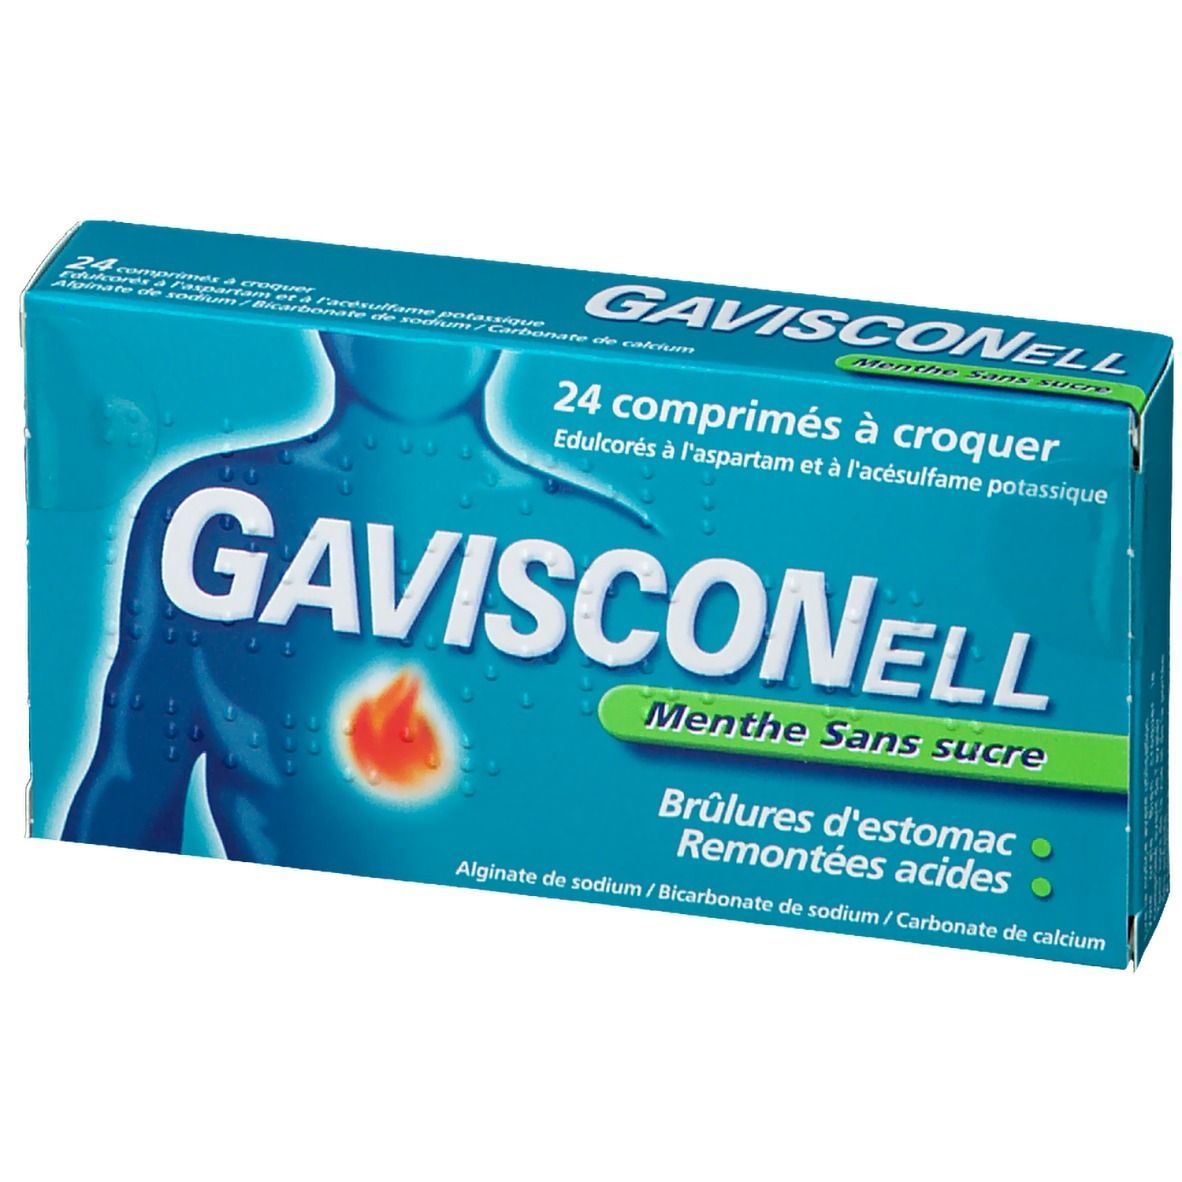 Gavisconell Menthe Sans Sucre - Brûlures d'estomac et Remontées Acides